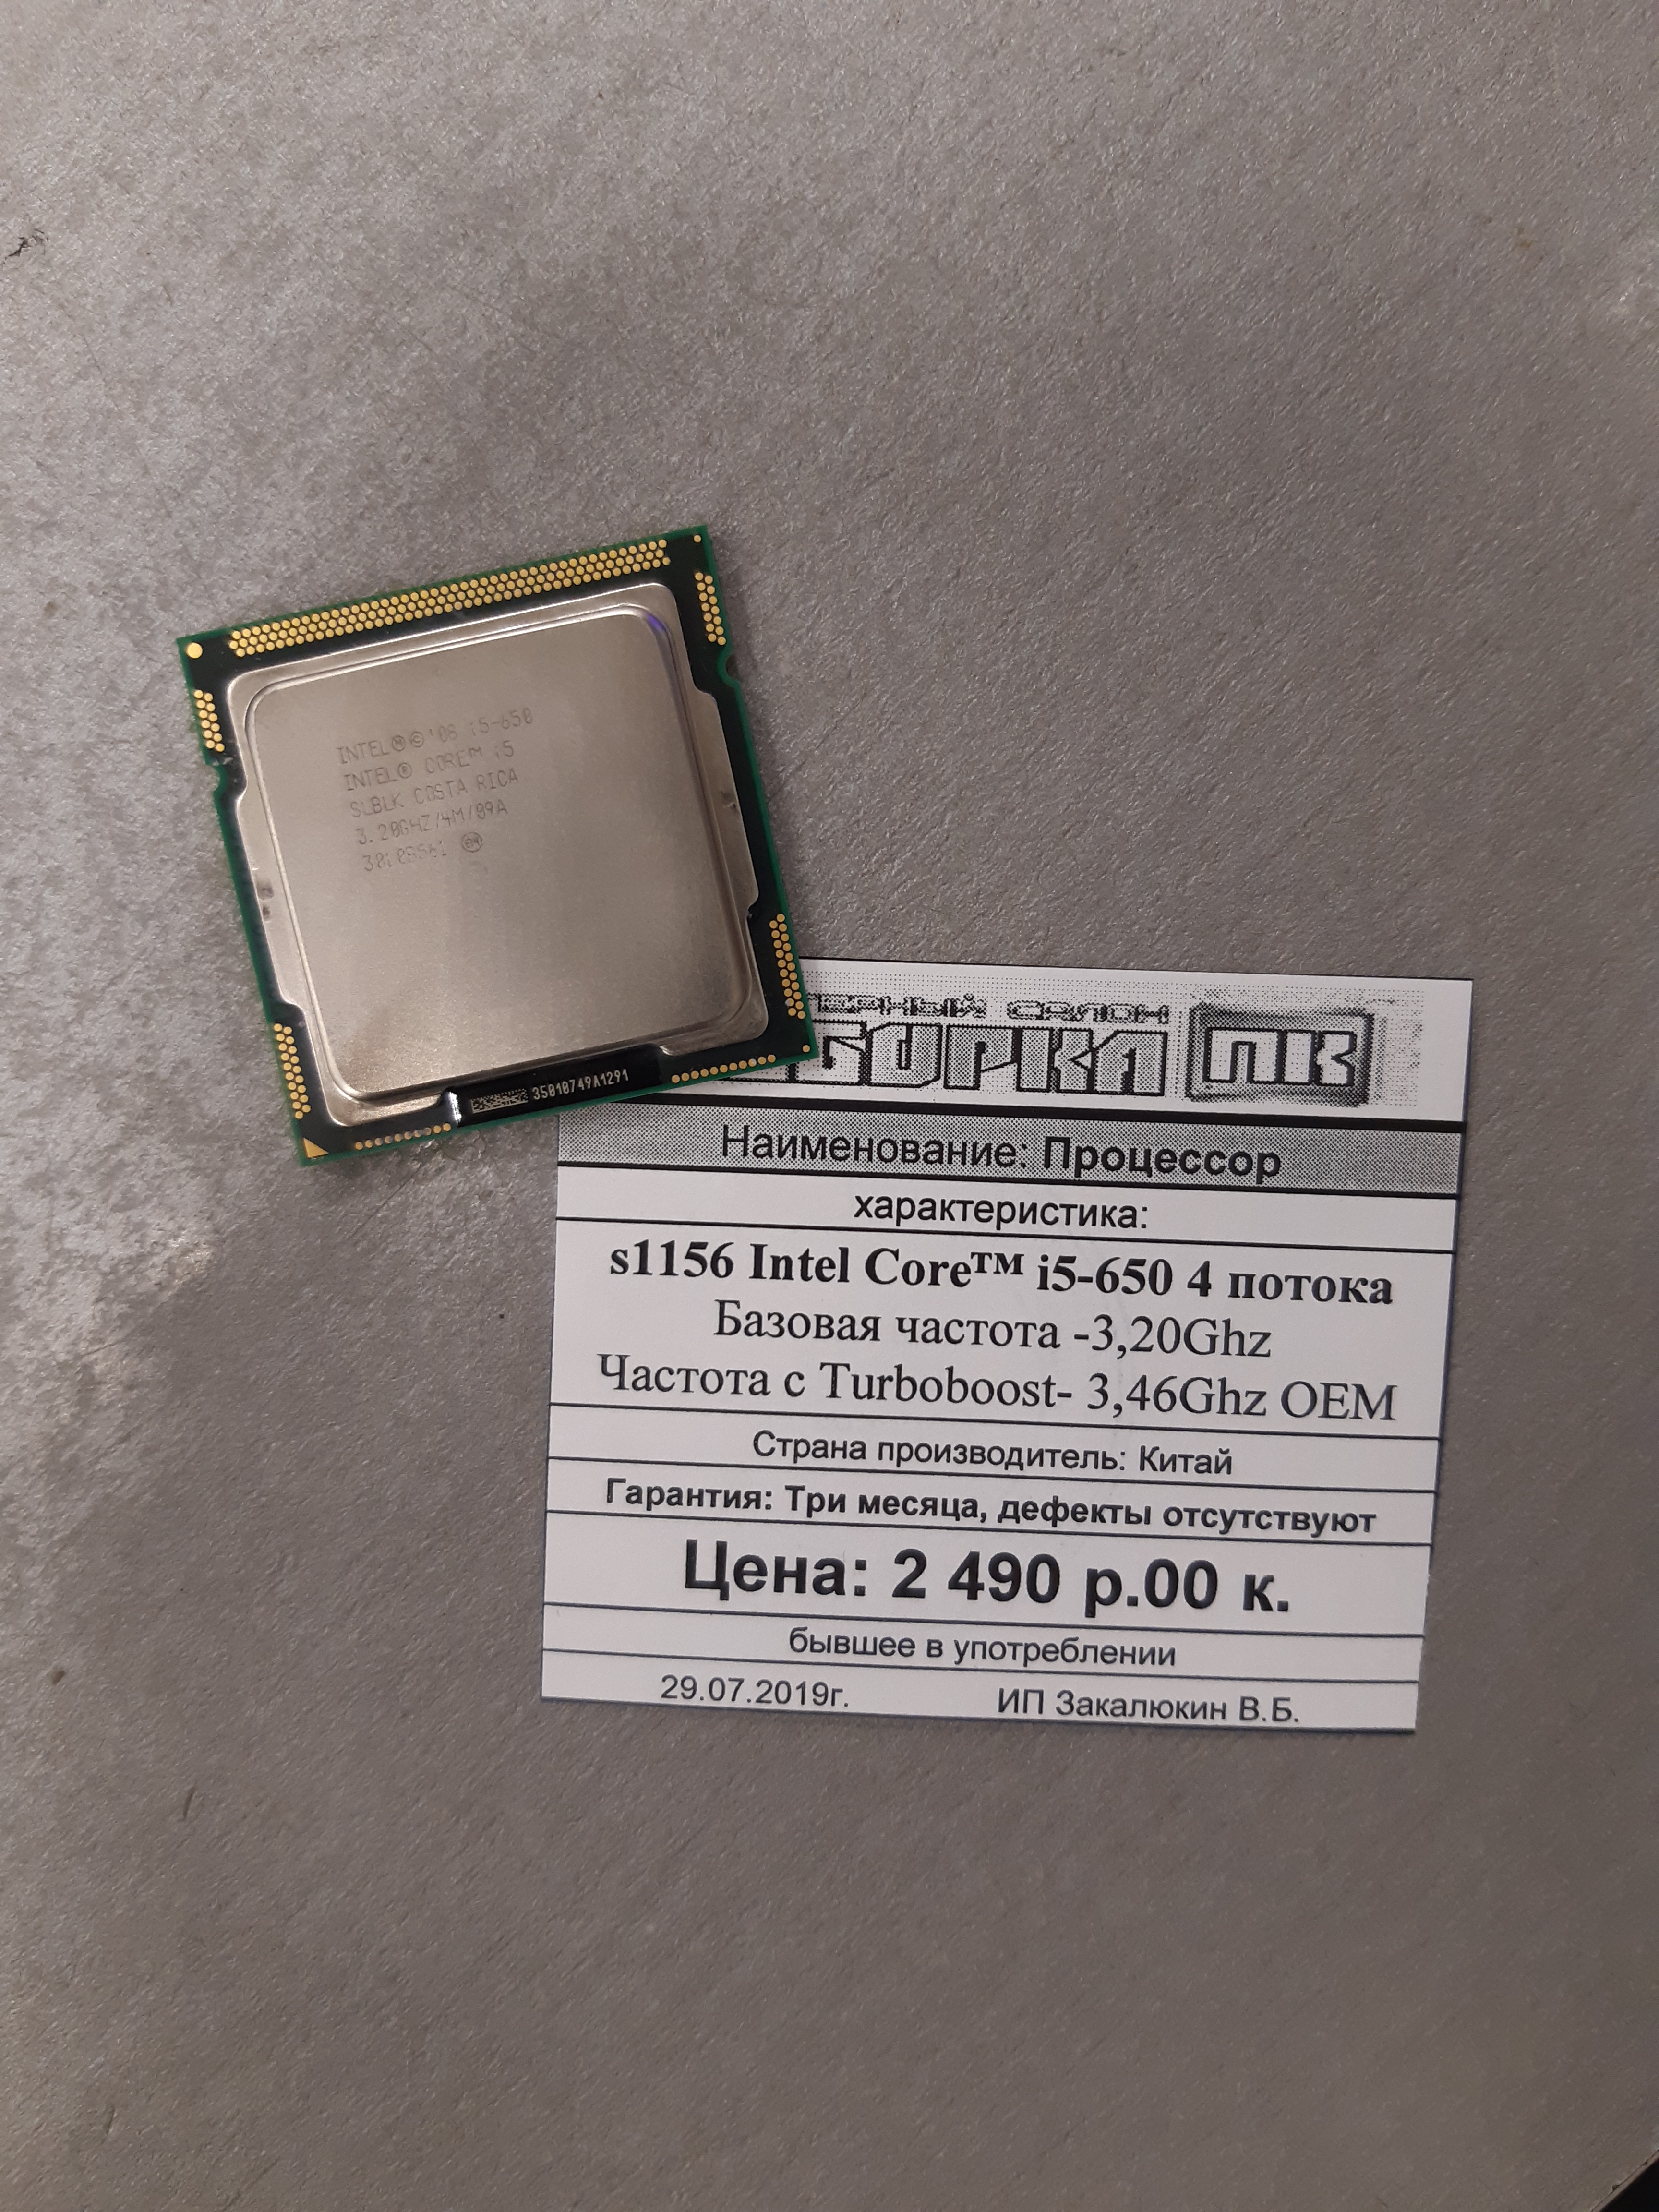 Процессор s1156 Intel Core™ i5-650